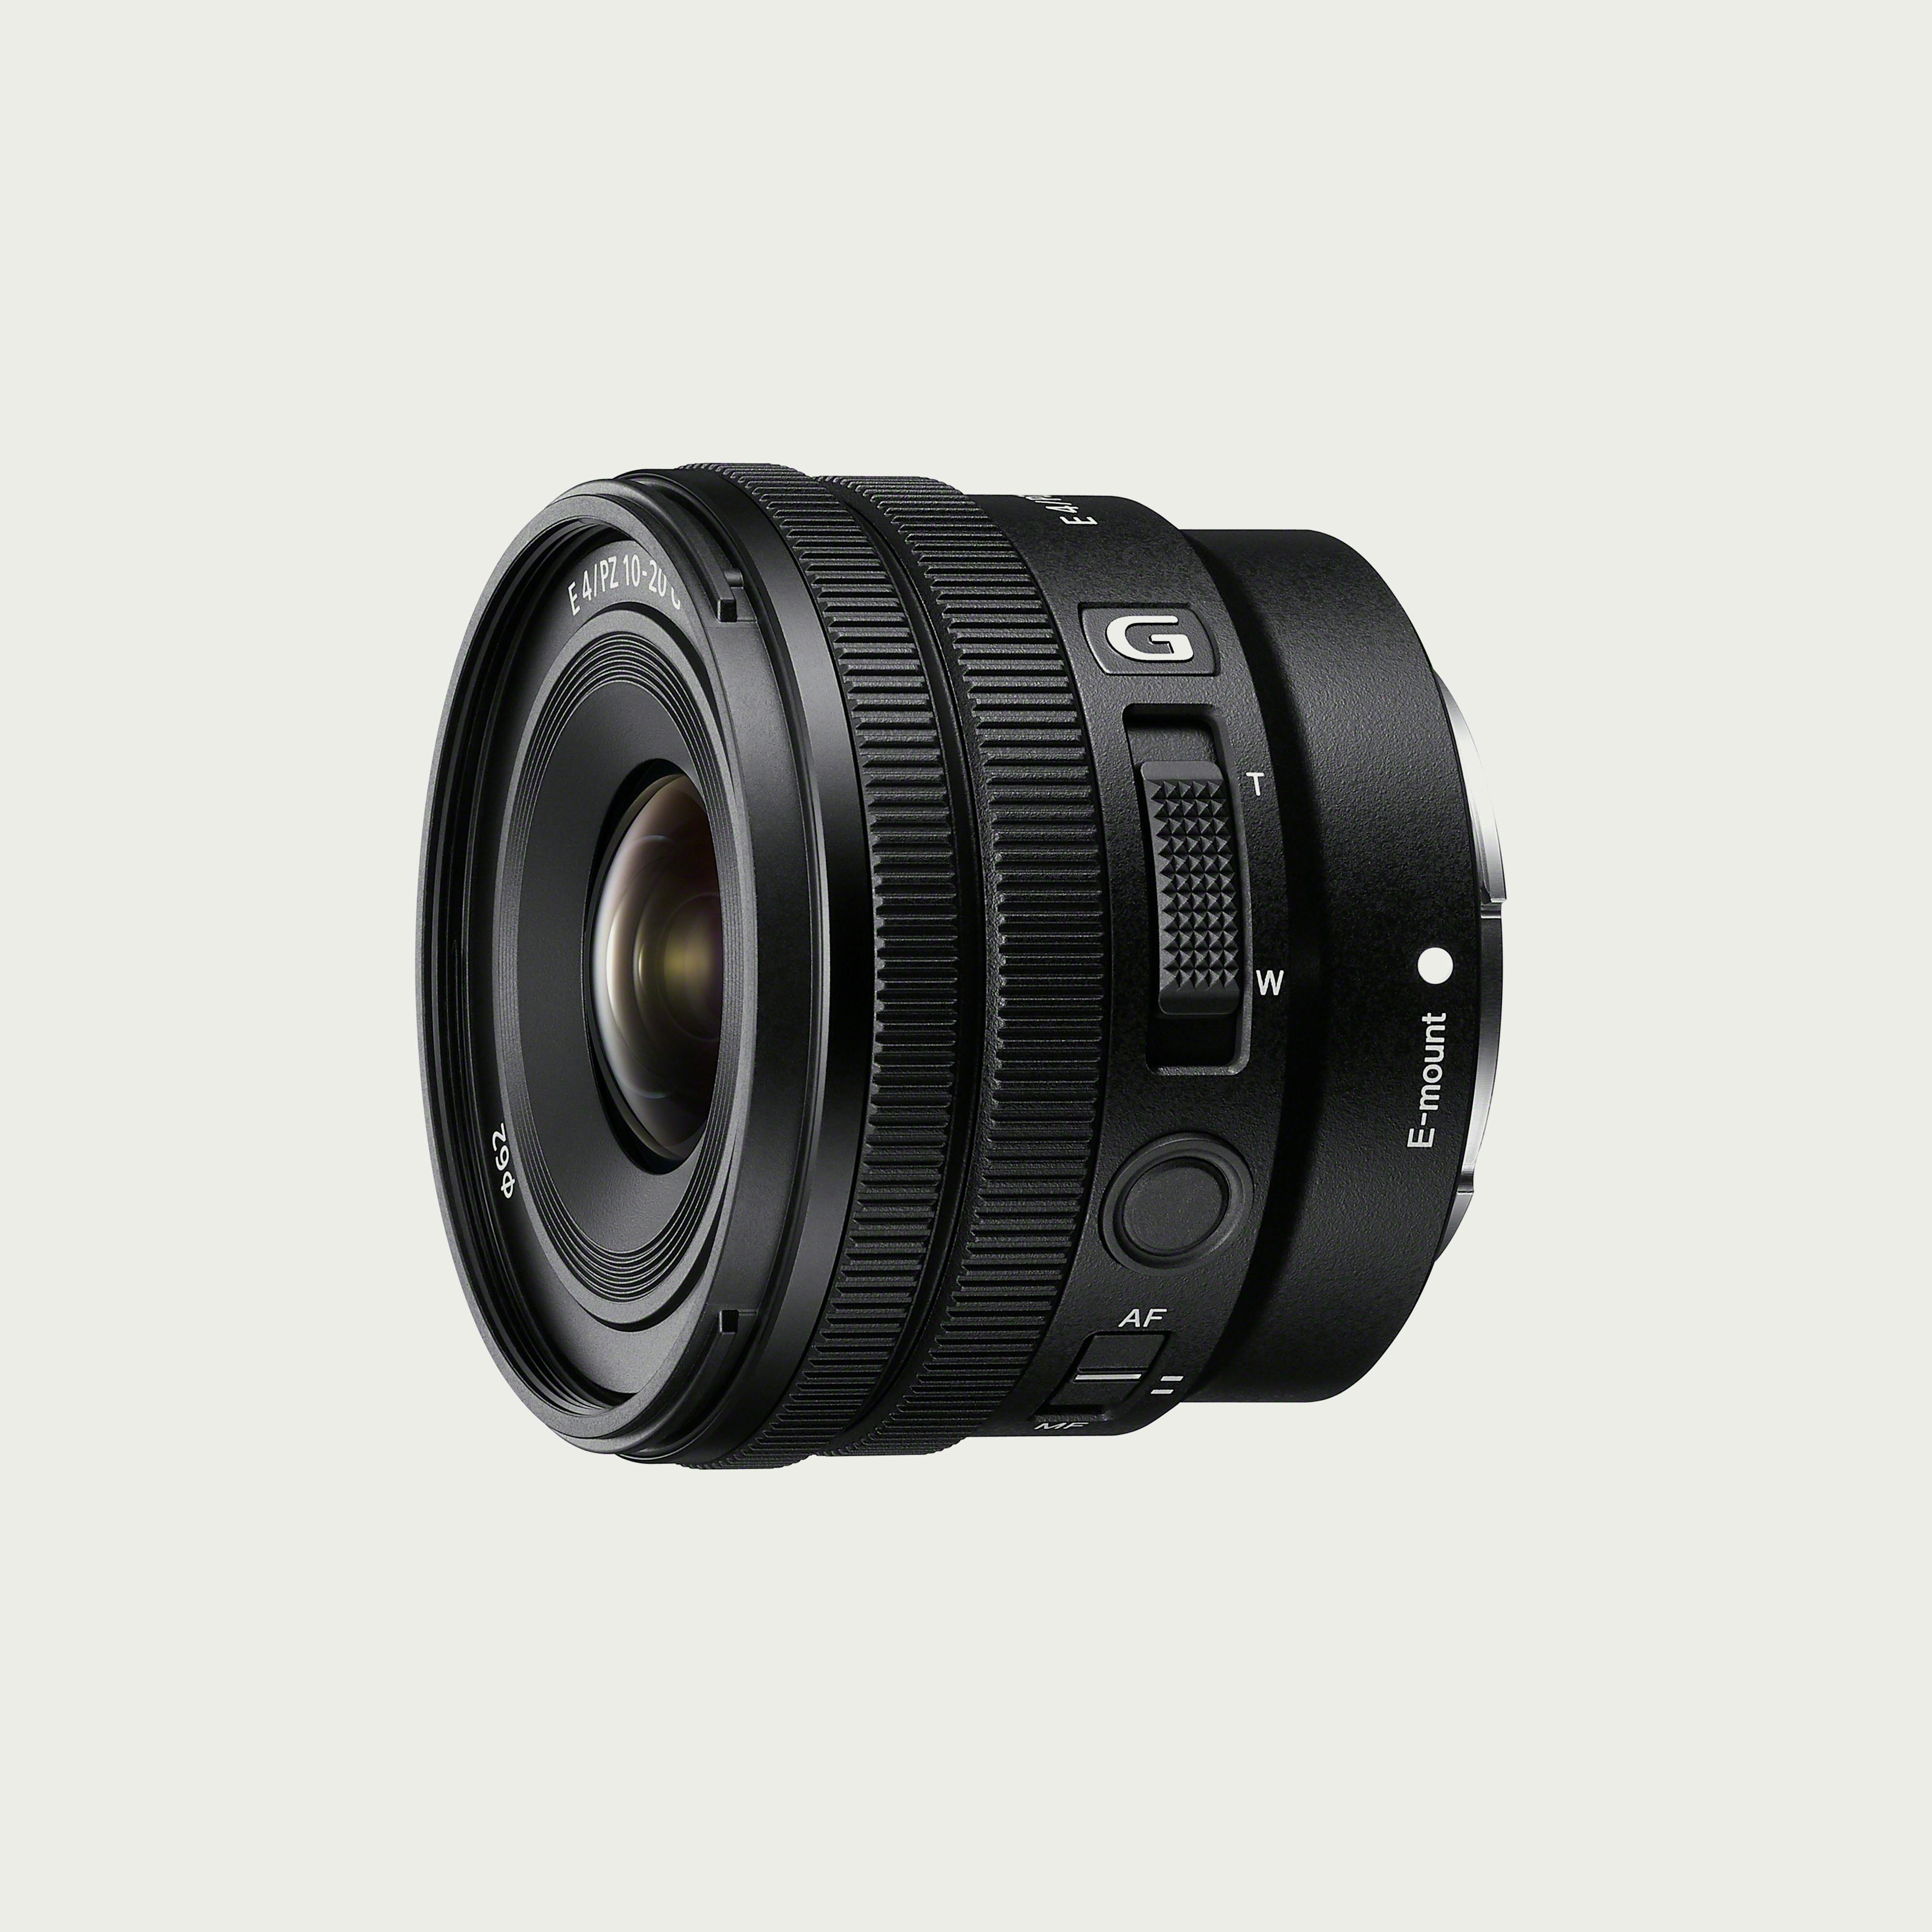 E PZ 10-20mm F4 G Lens